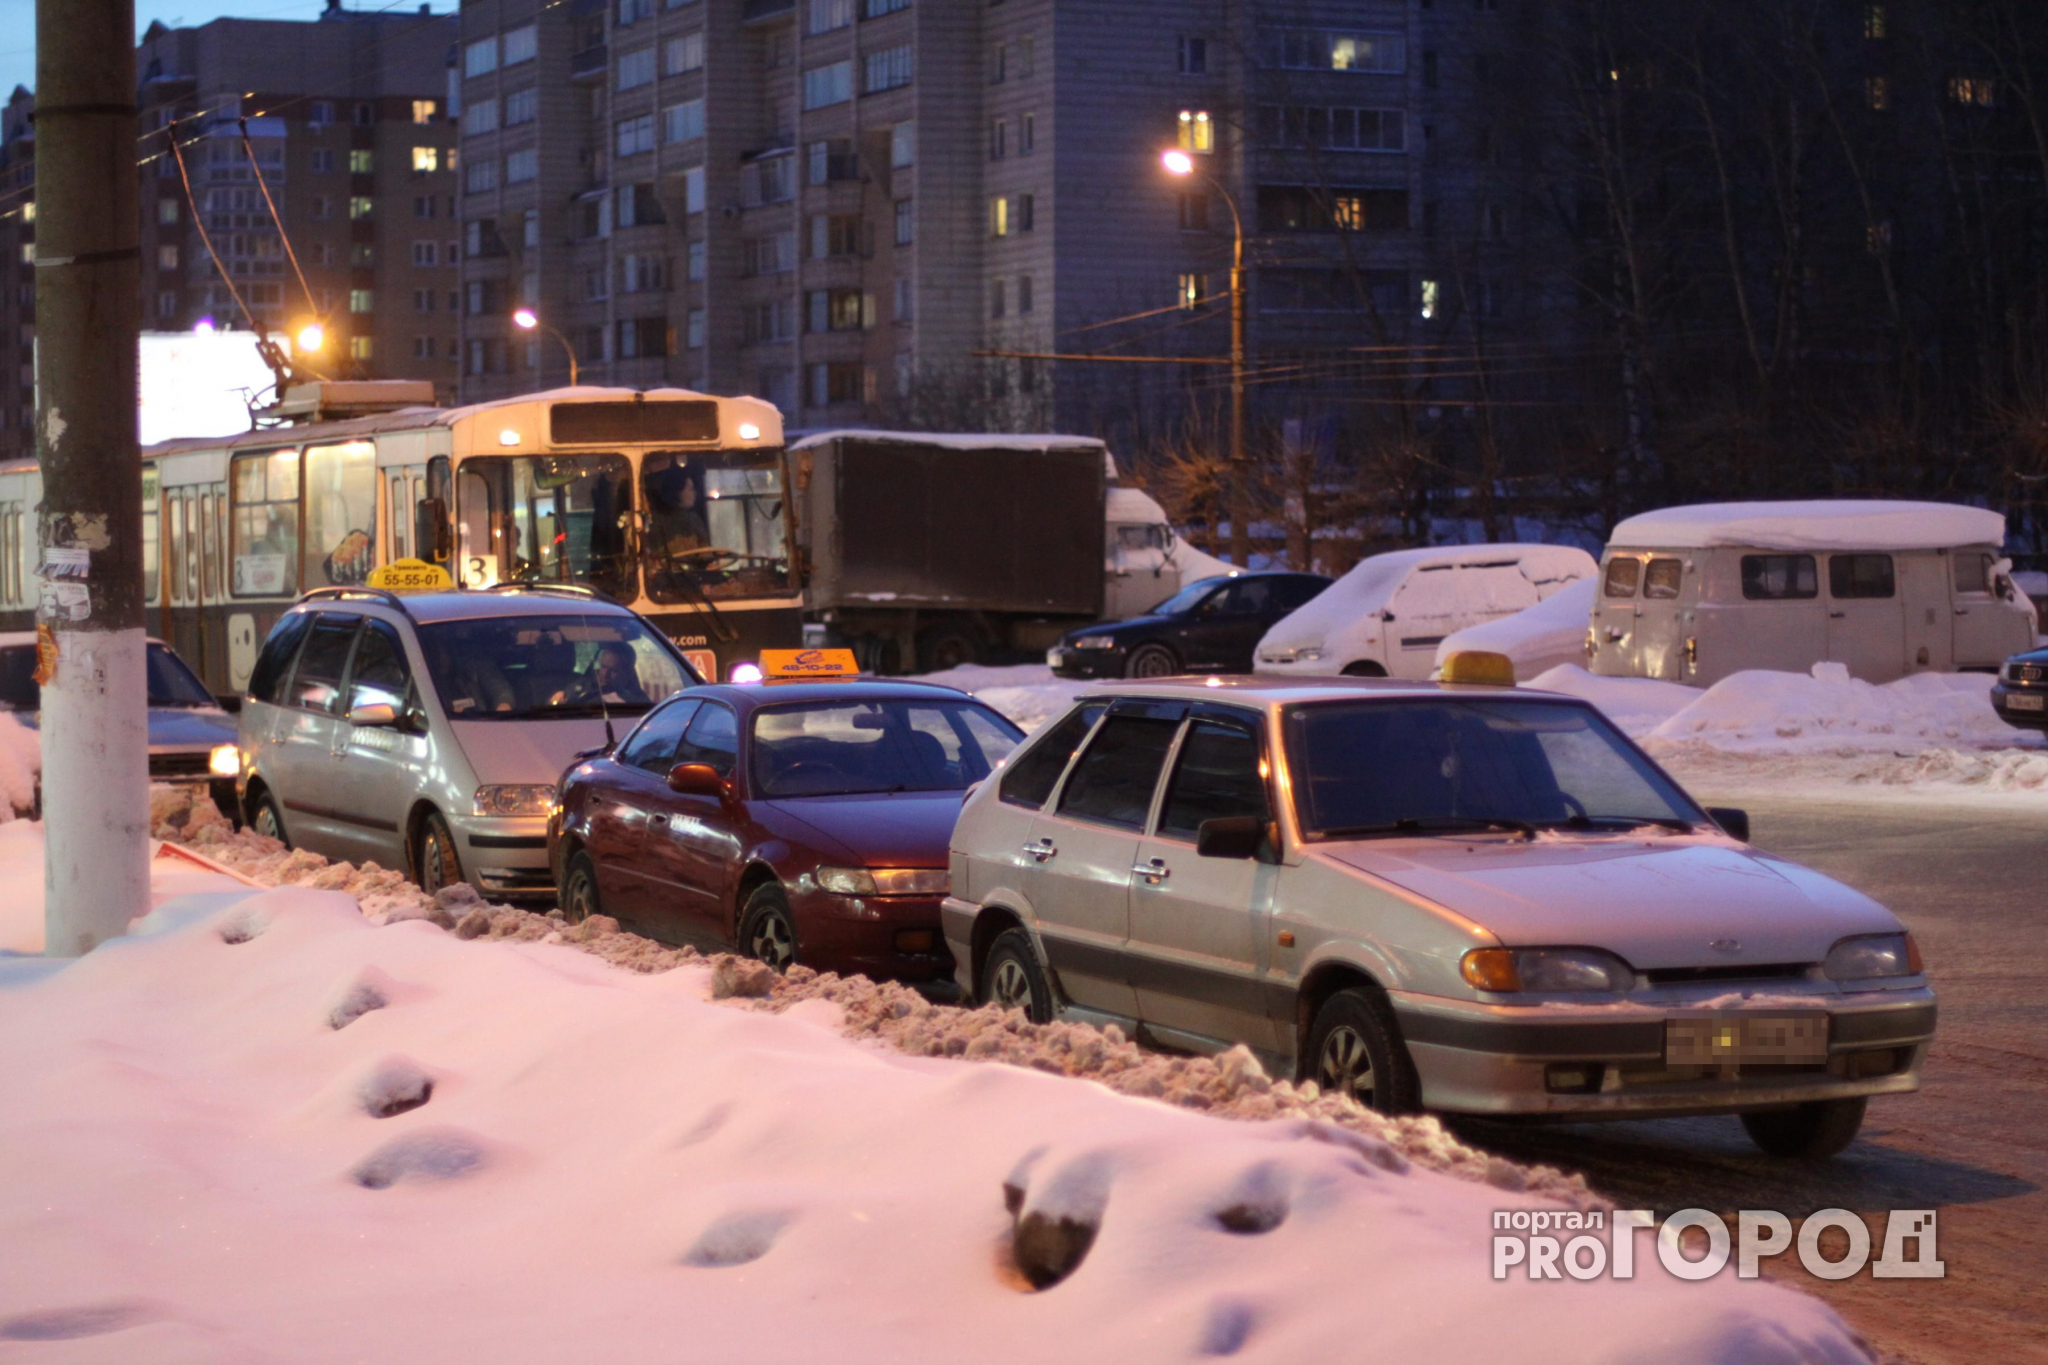 Что обсуждают в Кирове: стоимость проезда в такси и проводник, укравший деньги